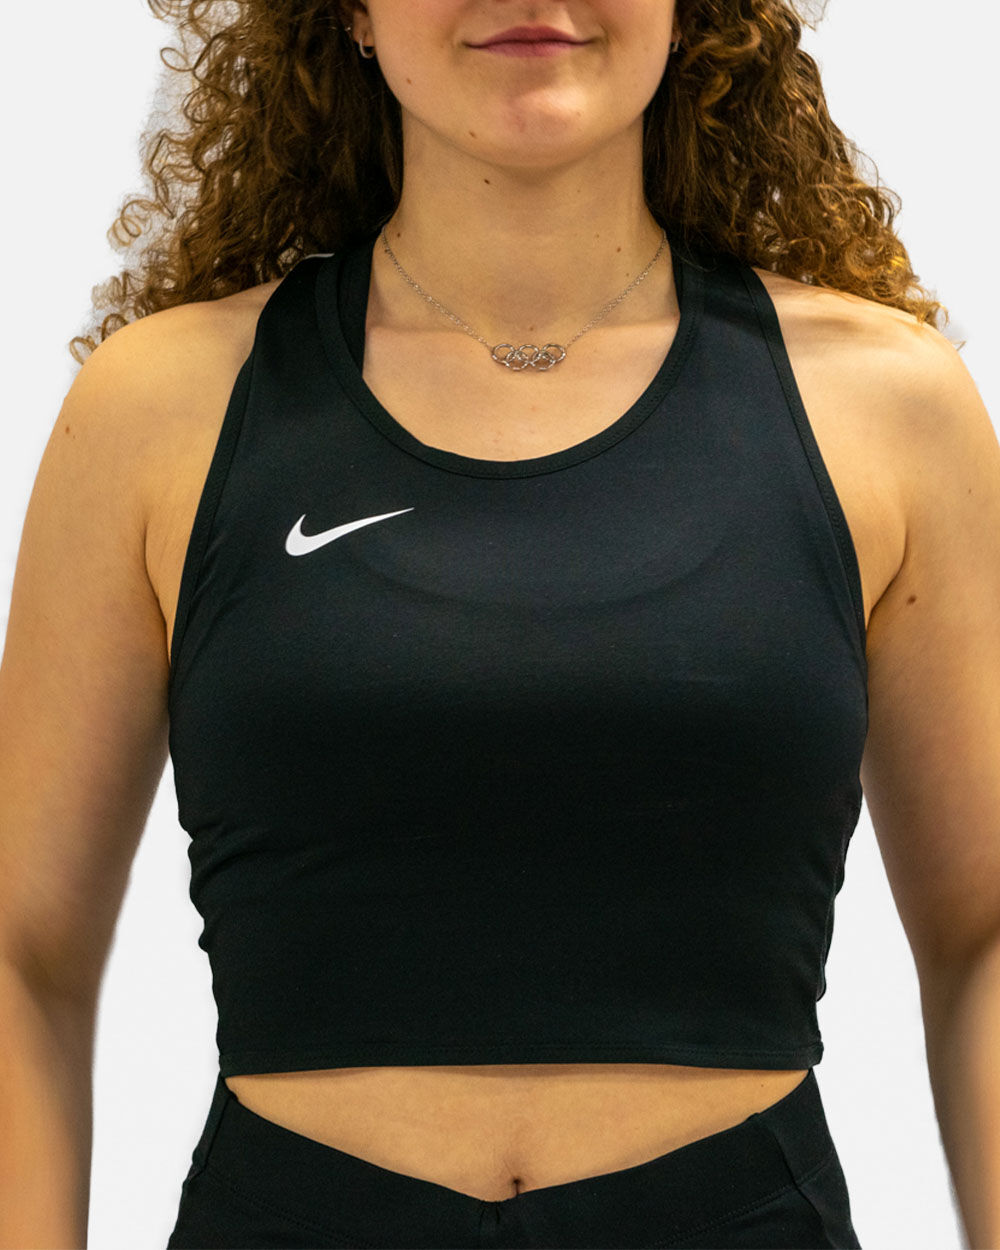 Camiseta sin mangas de running Nike Stock Negro para Mujeres - NT0312-010